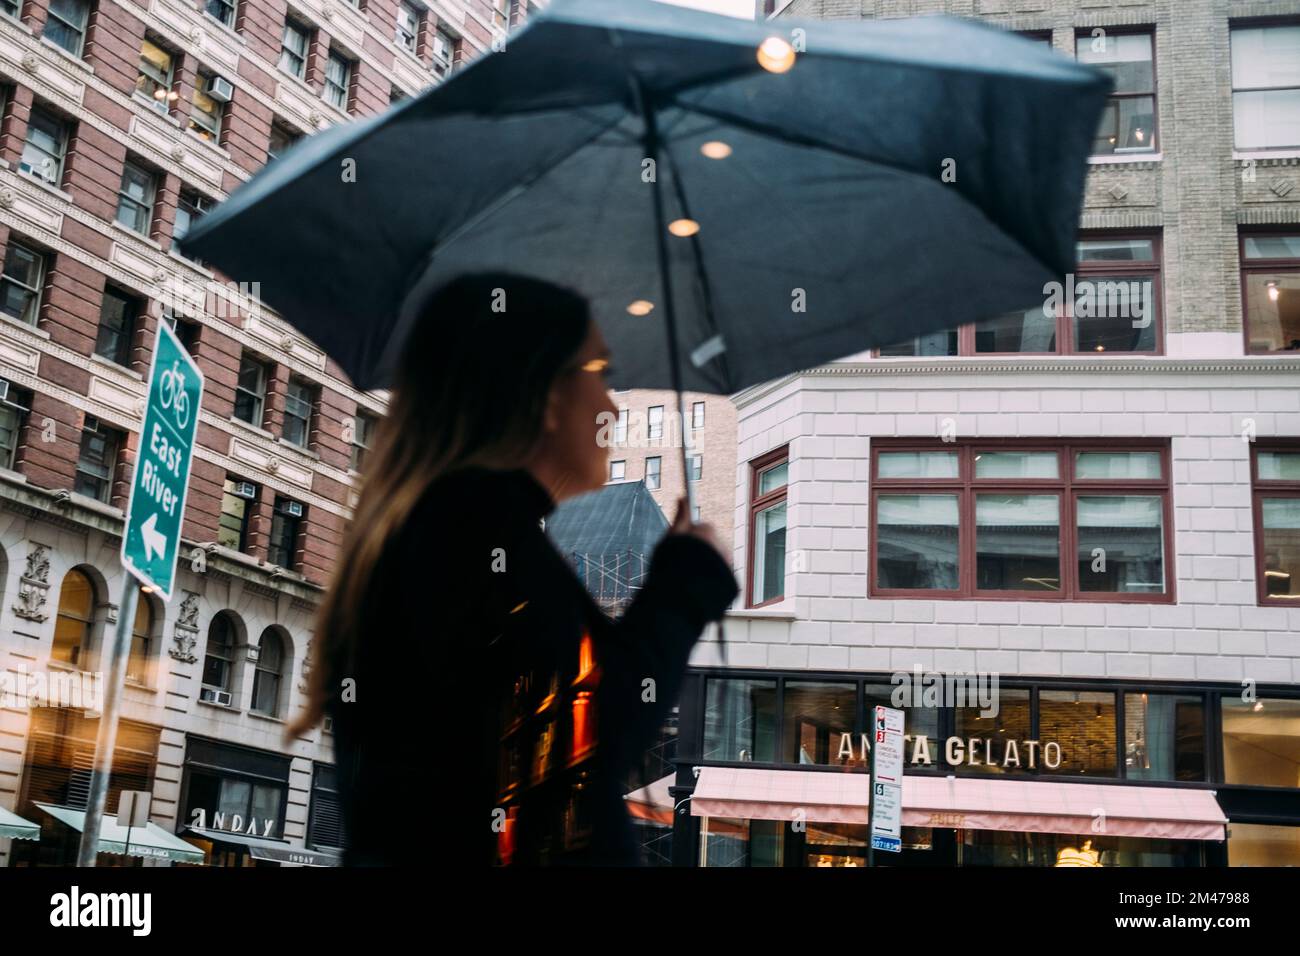 New York Manhattan, 02,10 - 10.10.22: Frau mit Regenschirm durch einer Fensterscheibe fotografiert. Foto: Presentazione Mika Volkmann Foto Stock